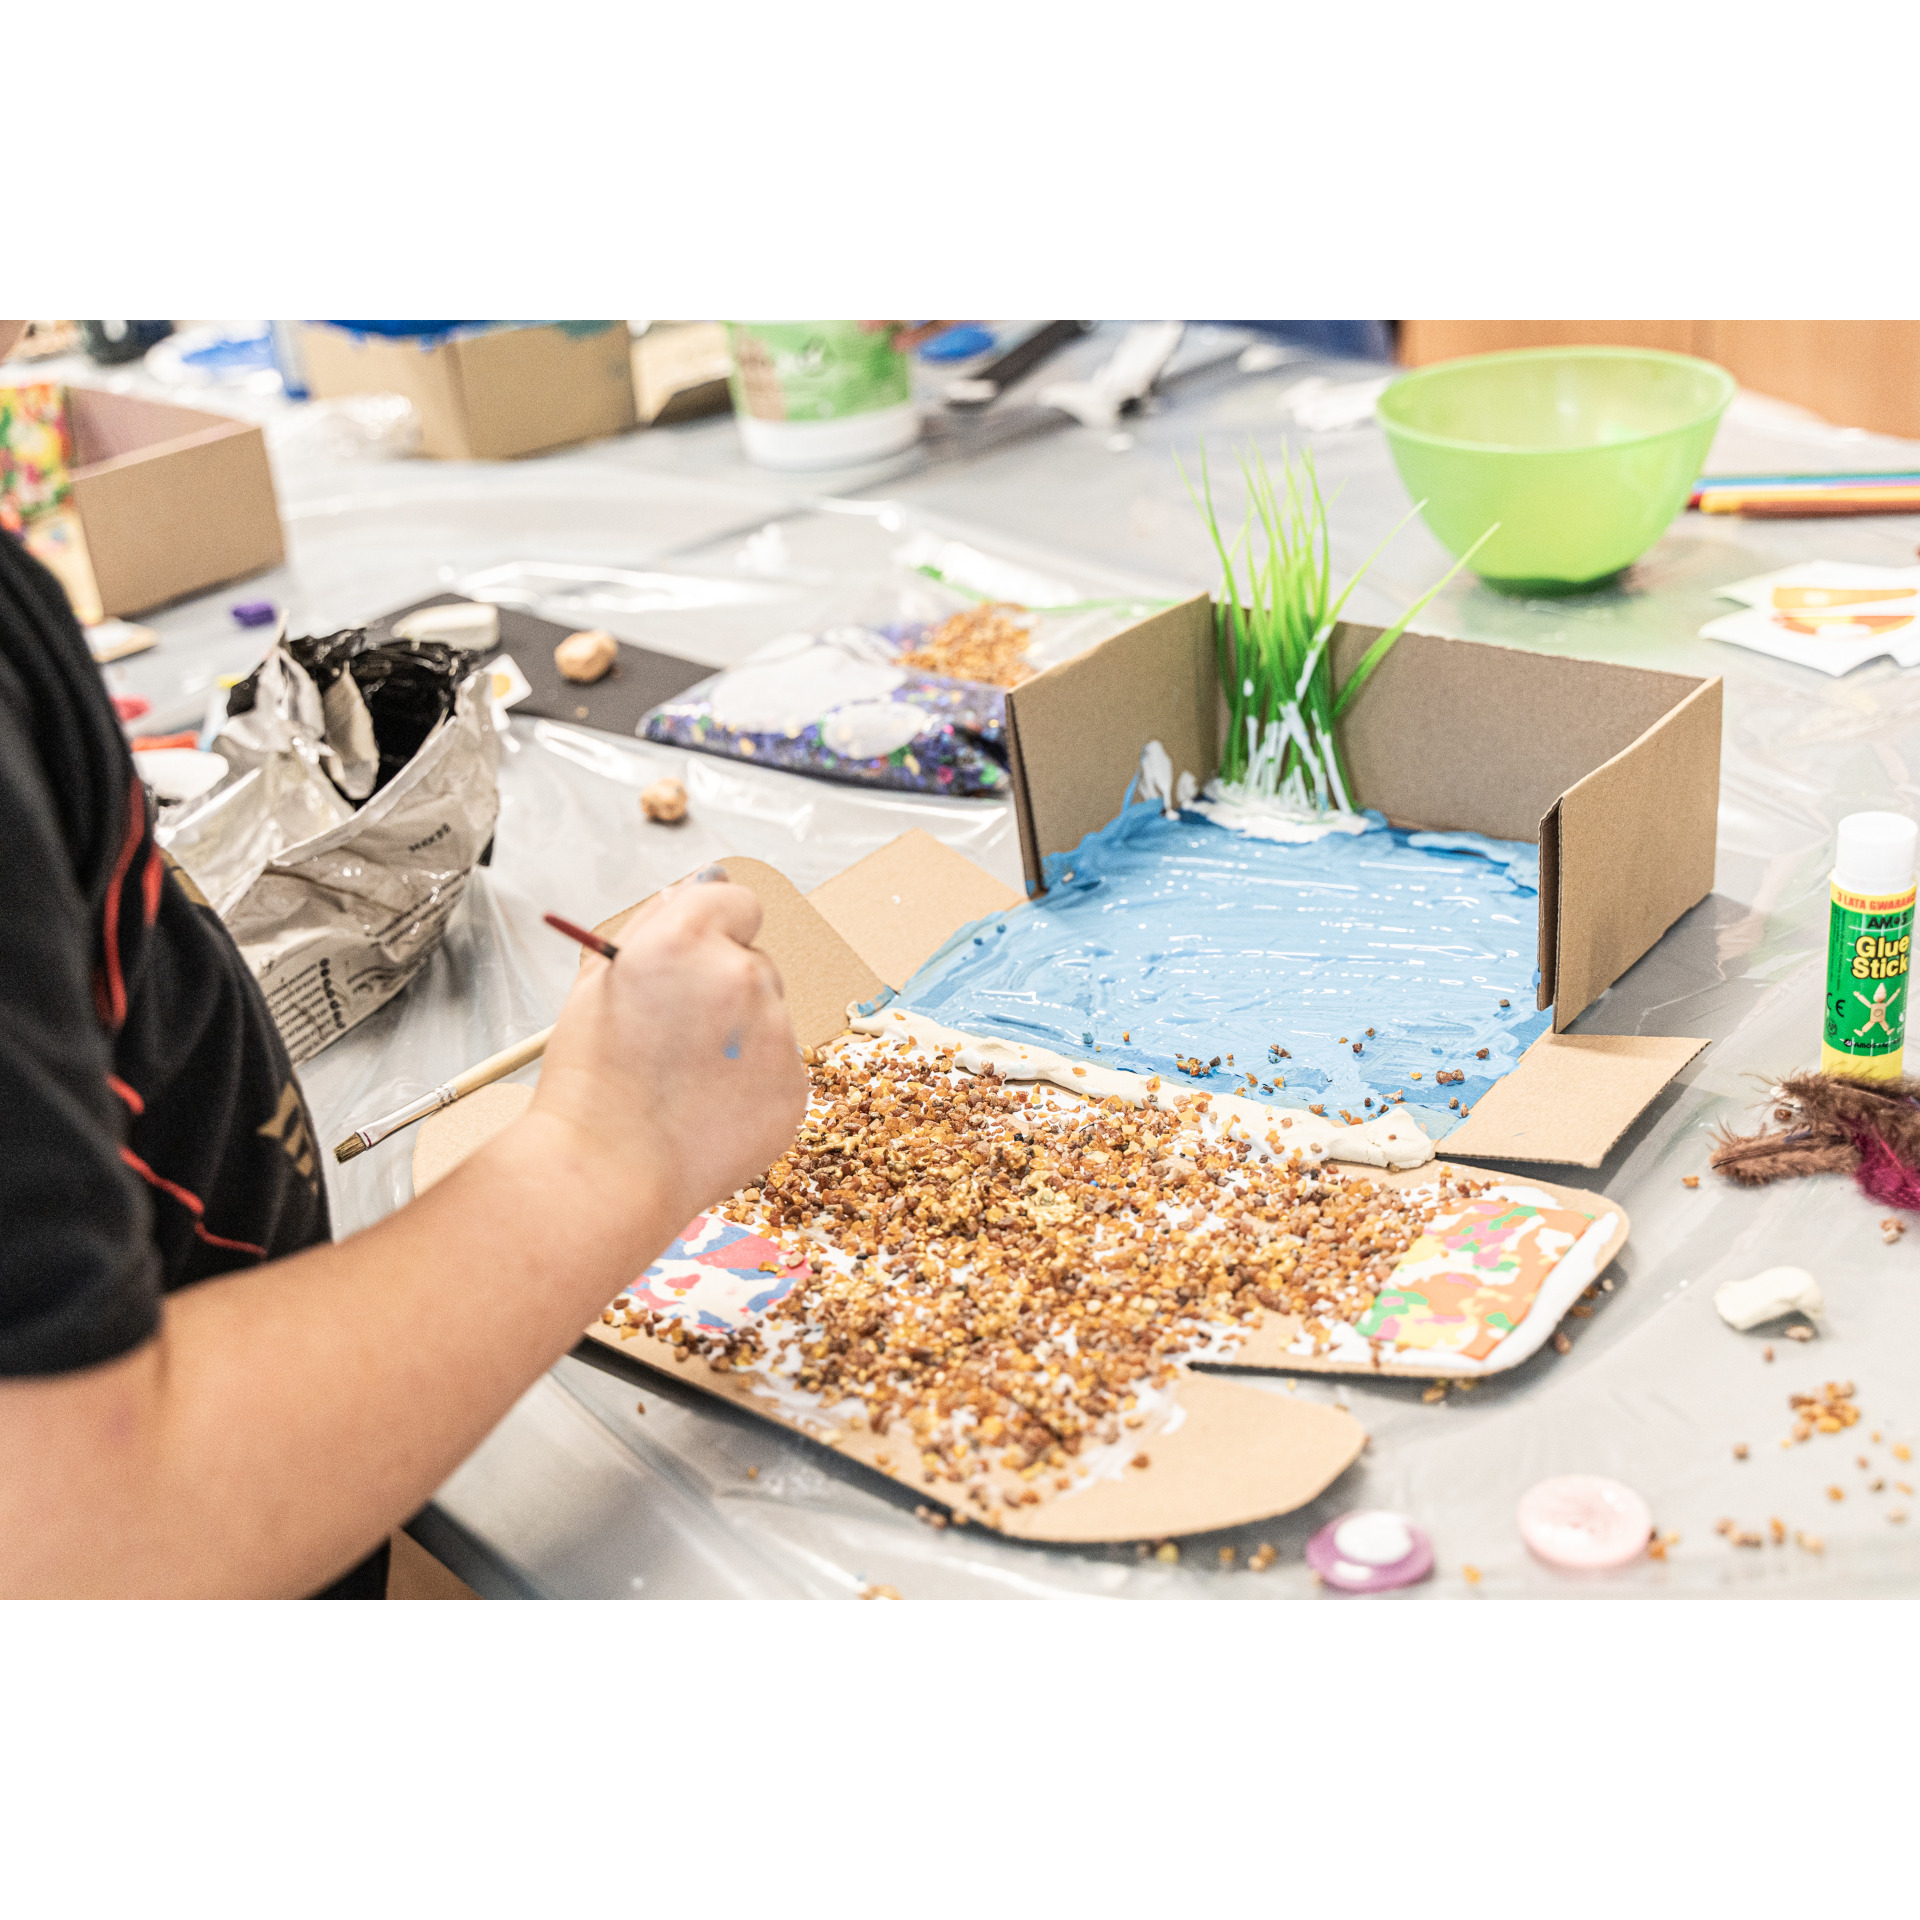 Śmieciotwory, czyli recykling artystyczny | warsztaty rodzinne dla dzieci w wieku 7–12 lat | PL + UA